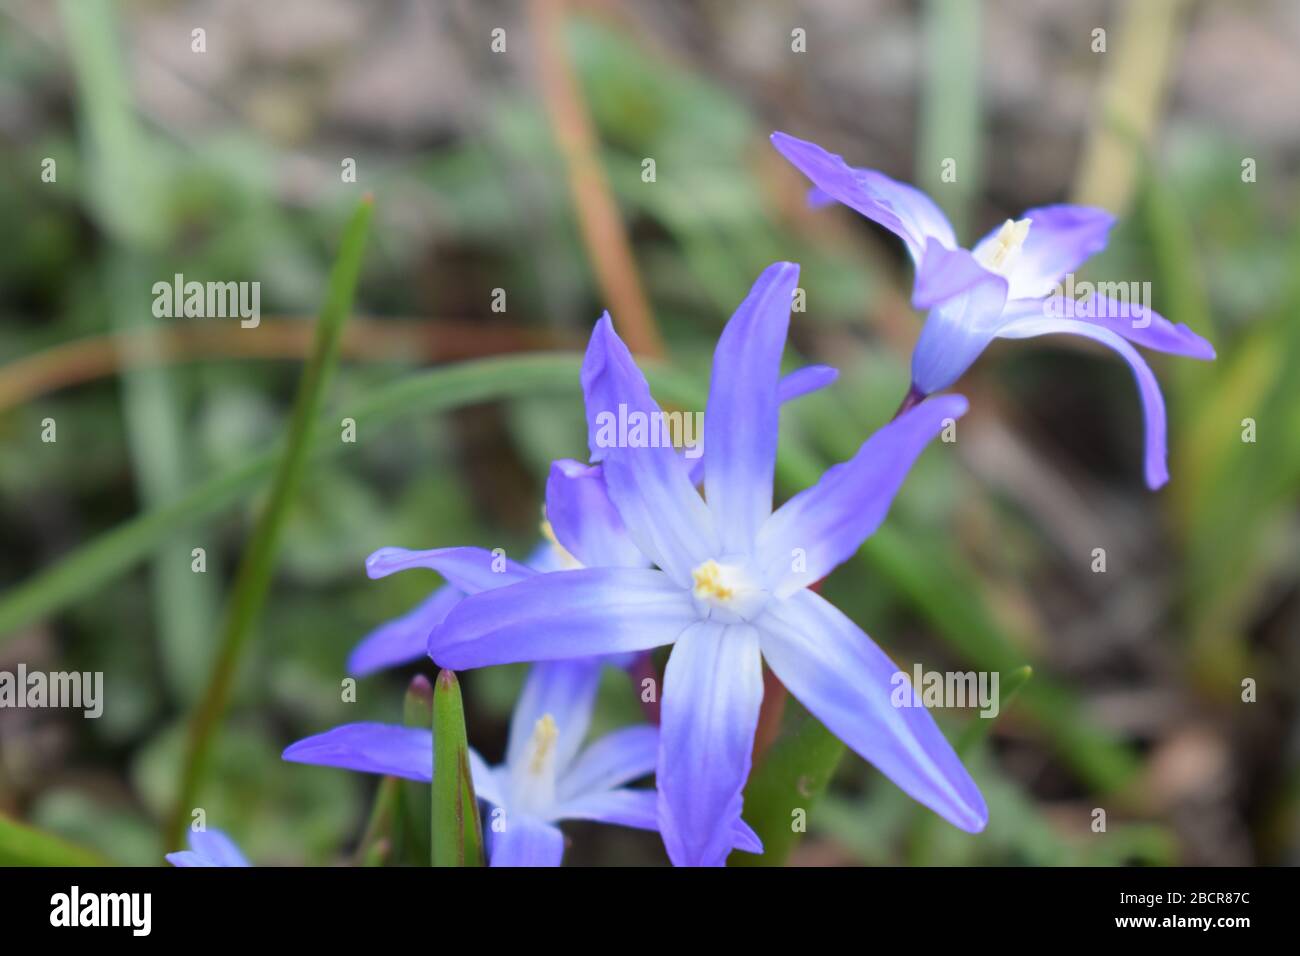 blue star flower Stock Photo